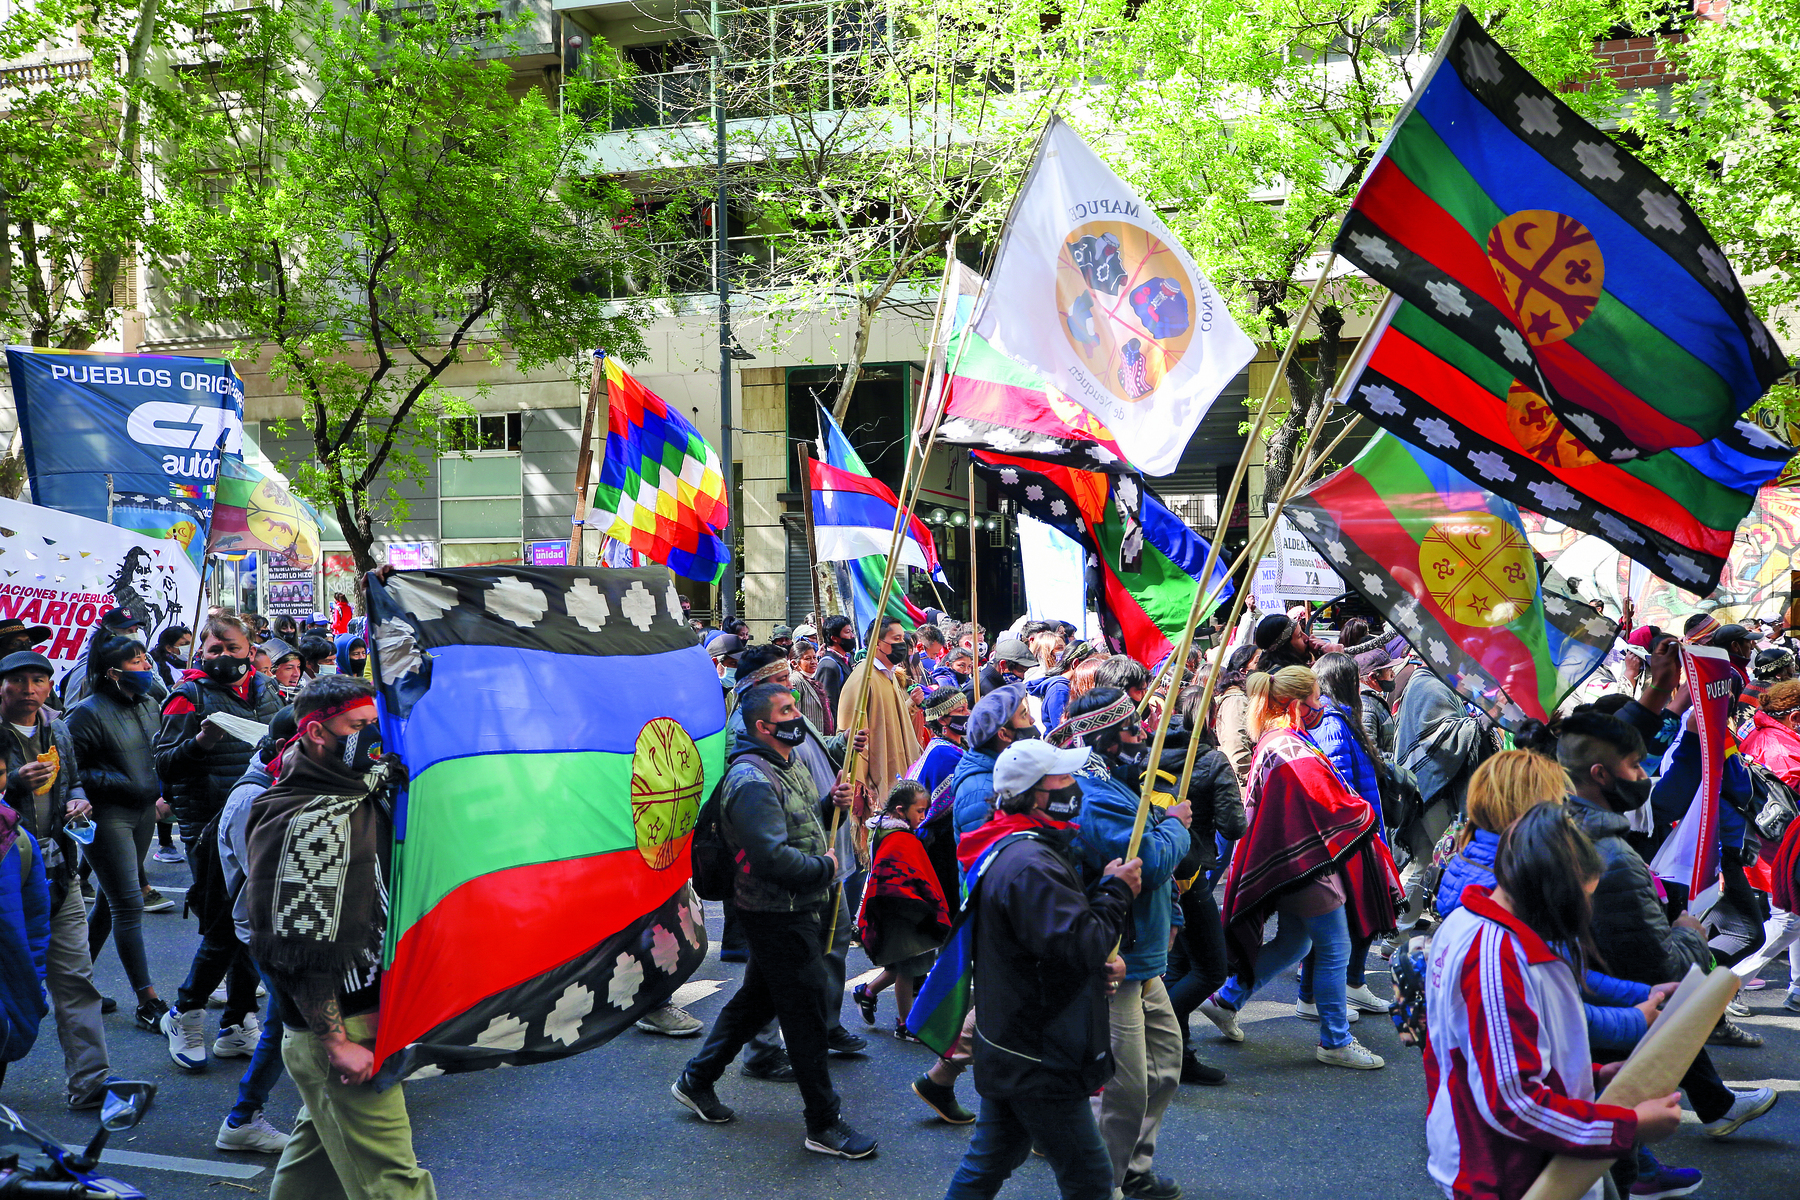 Fotografia. Muitas pessoas em uma manifestação na rua. Estão de máscara. Carregam bandeiras coloridas. Ao fundo, uma construção e algumas árvores.